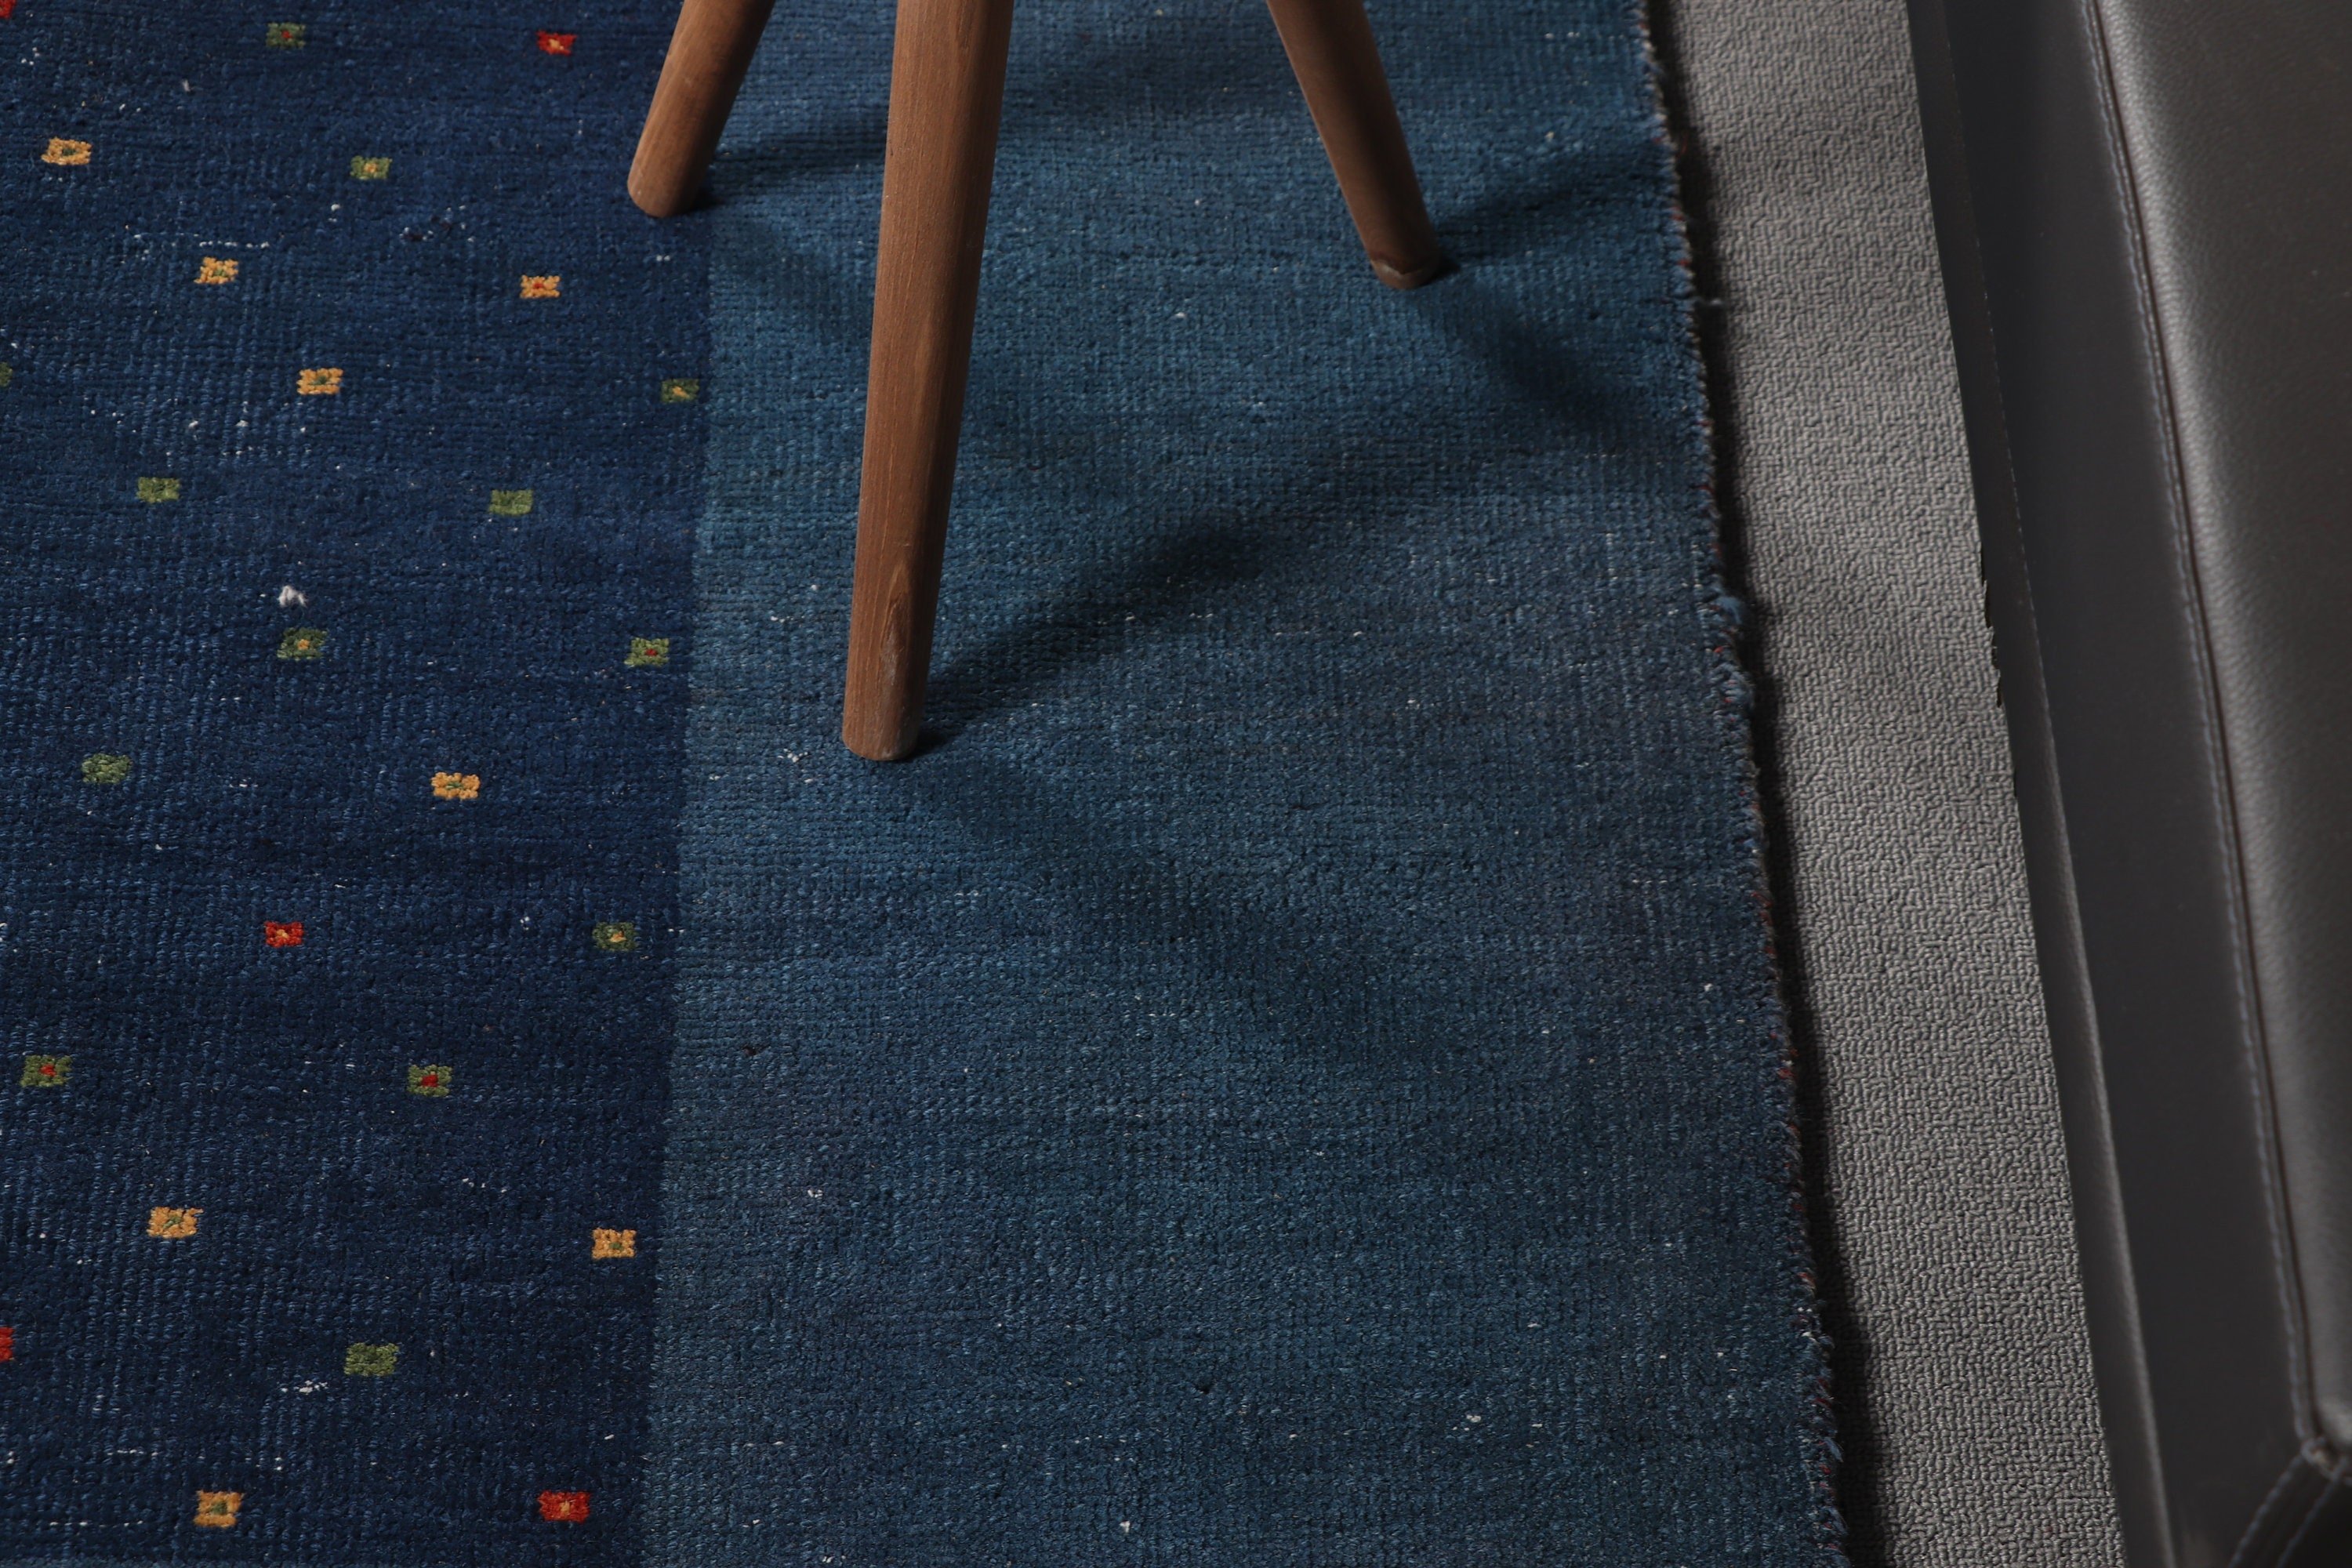 Blue Wool Rugs, Wool Rug, Indoor Rug, Turkish Rug, 5.4x7.4 ft Area Rug, Vintage Rug, Rugs for Bedroom, Dining Room Rug